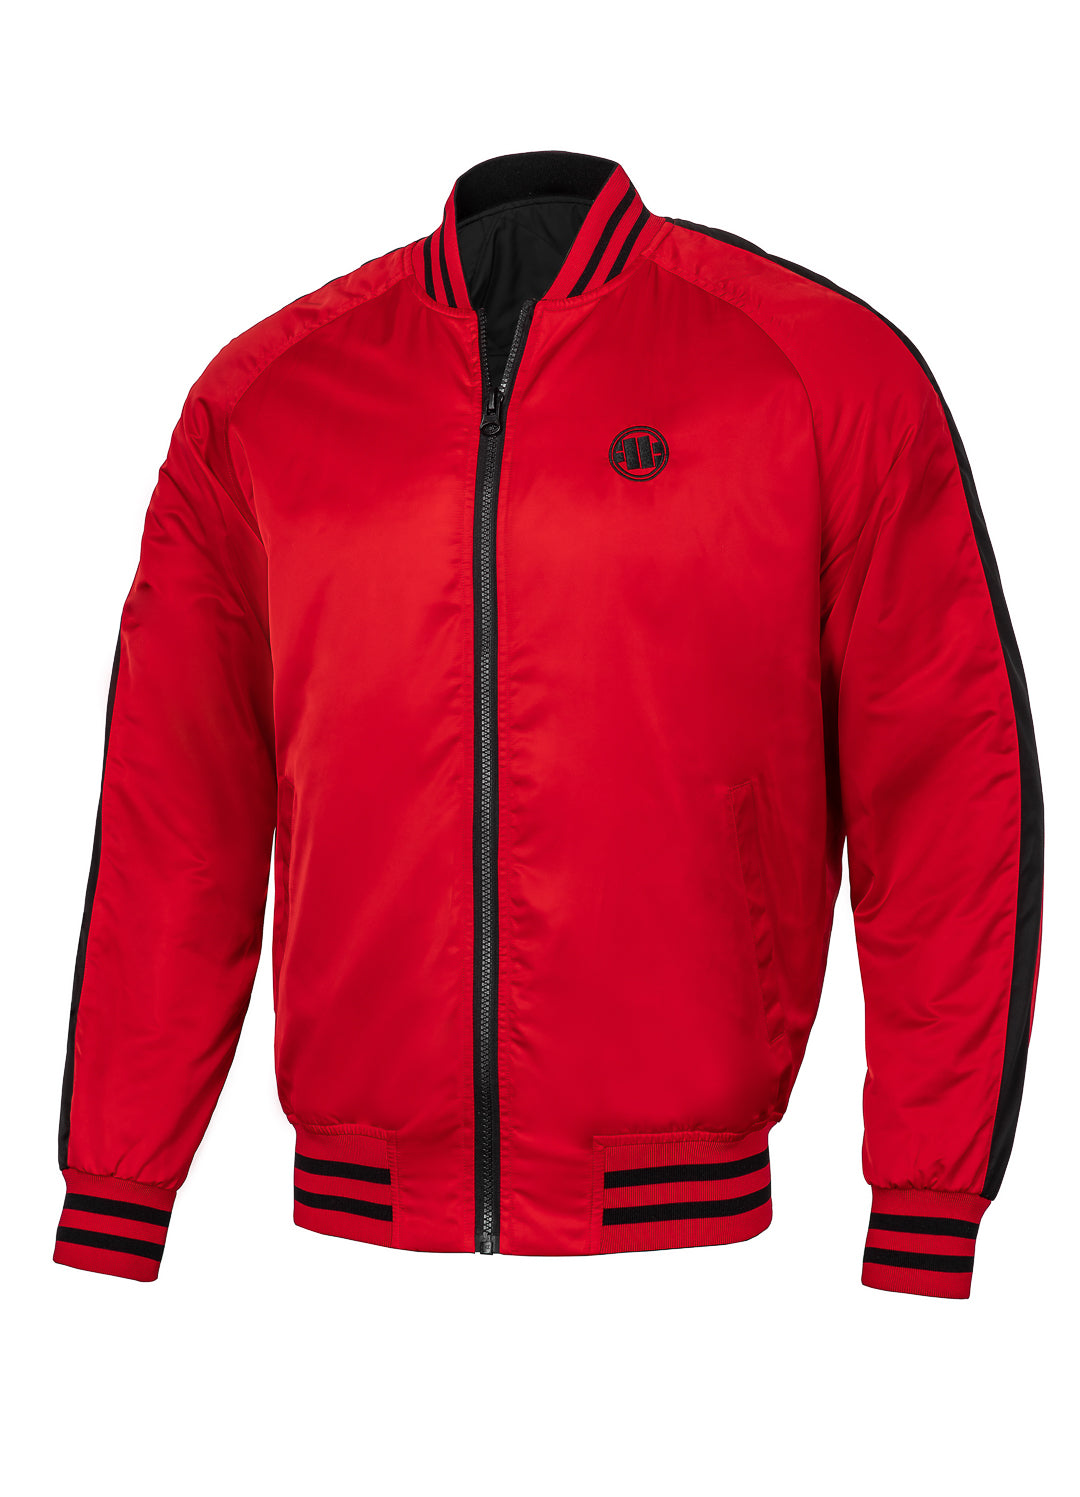 BROADWAY BIG LOGO Red Reversible Jacket.